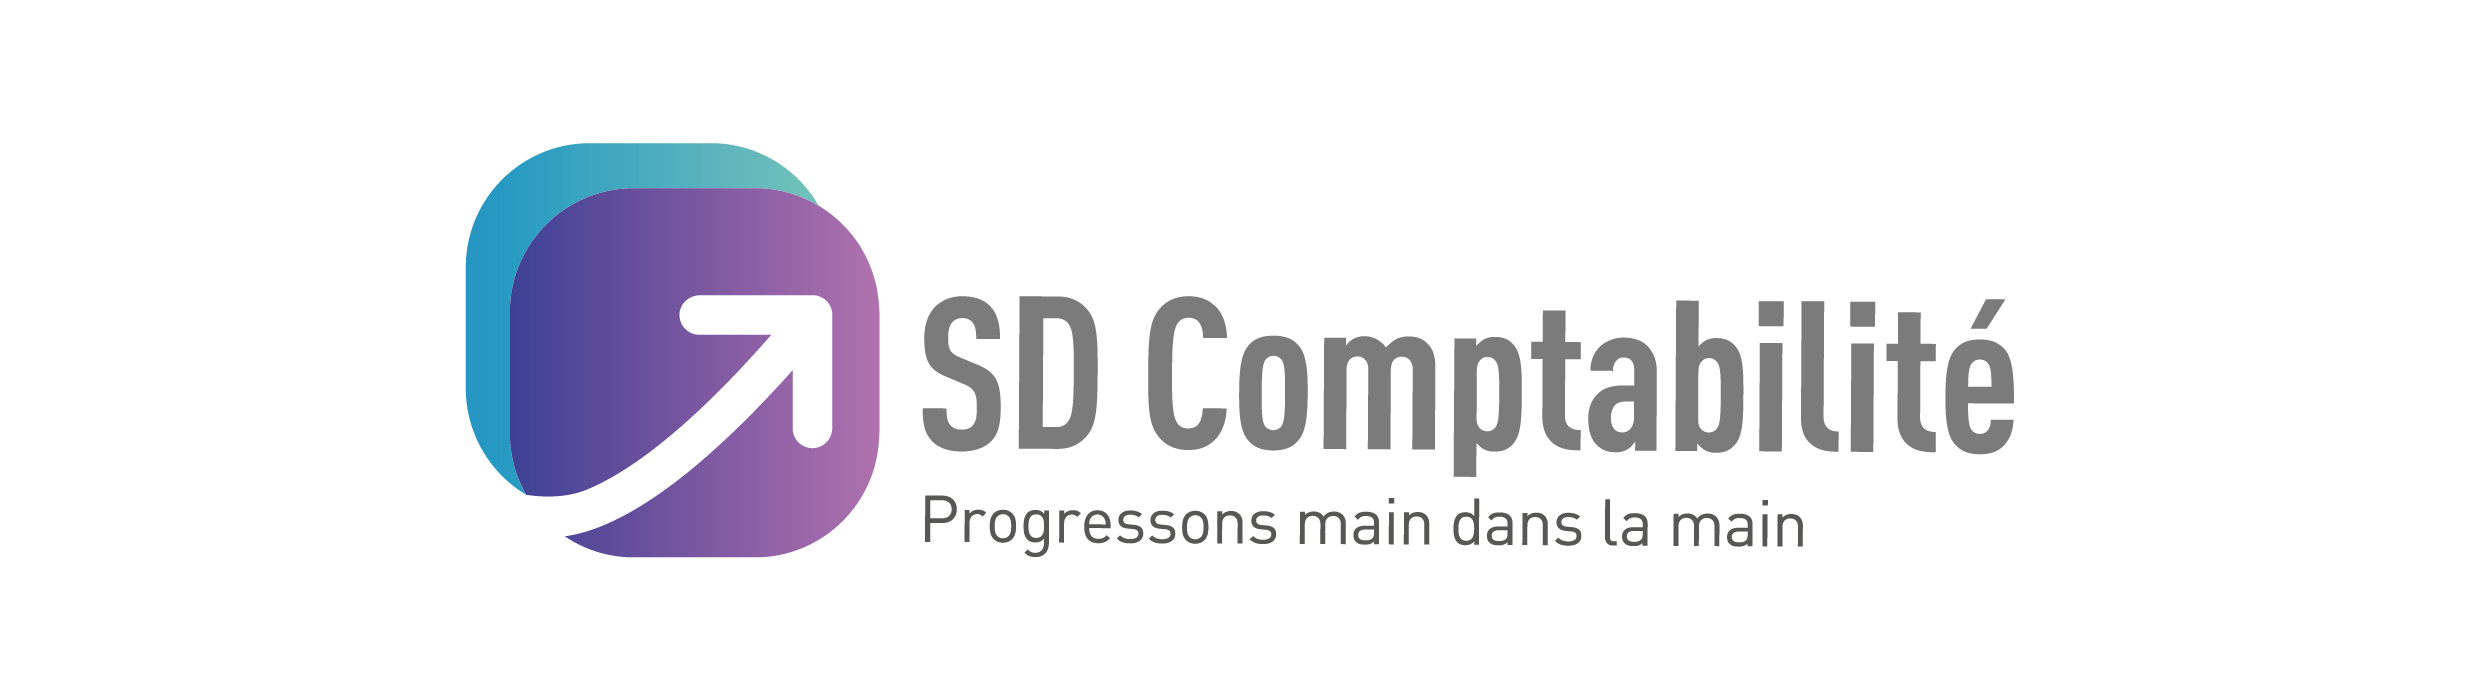 SD Comptabilité